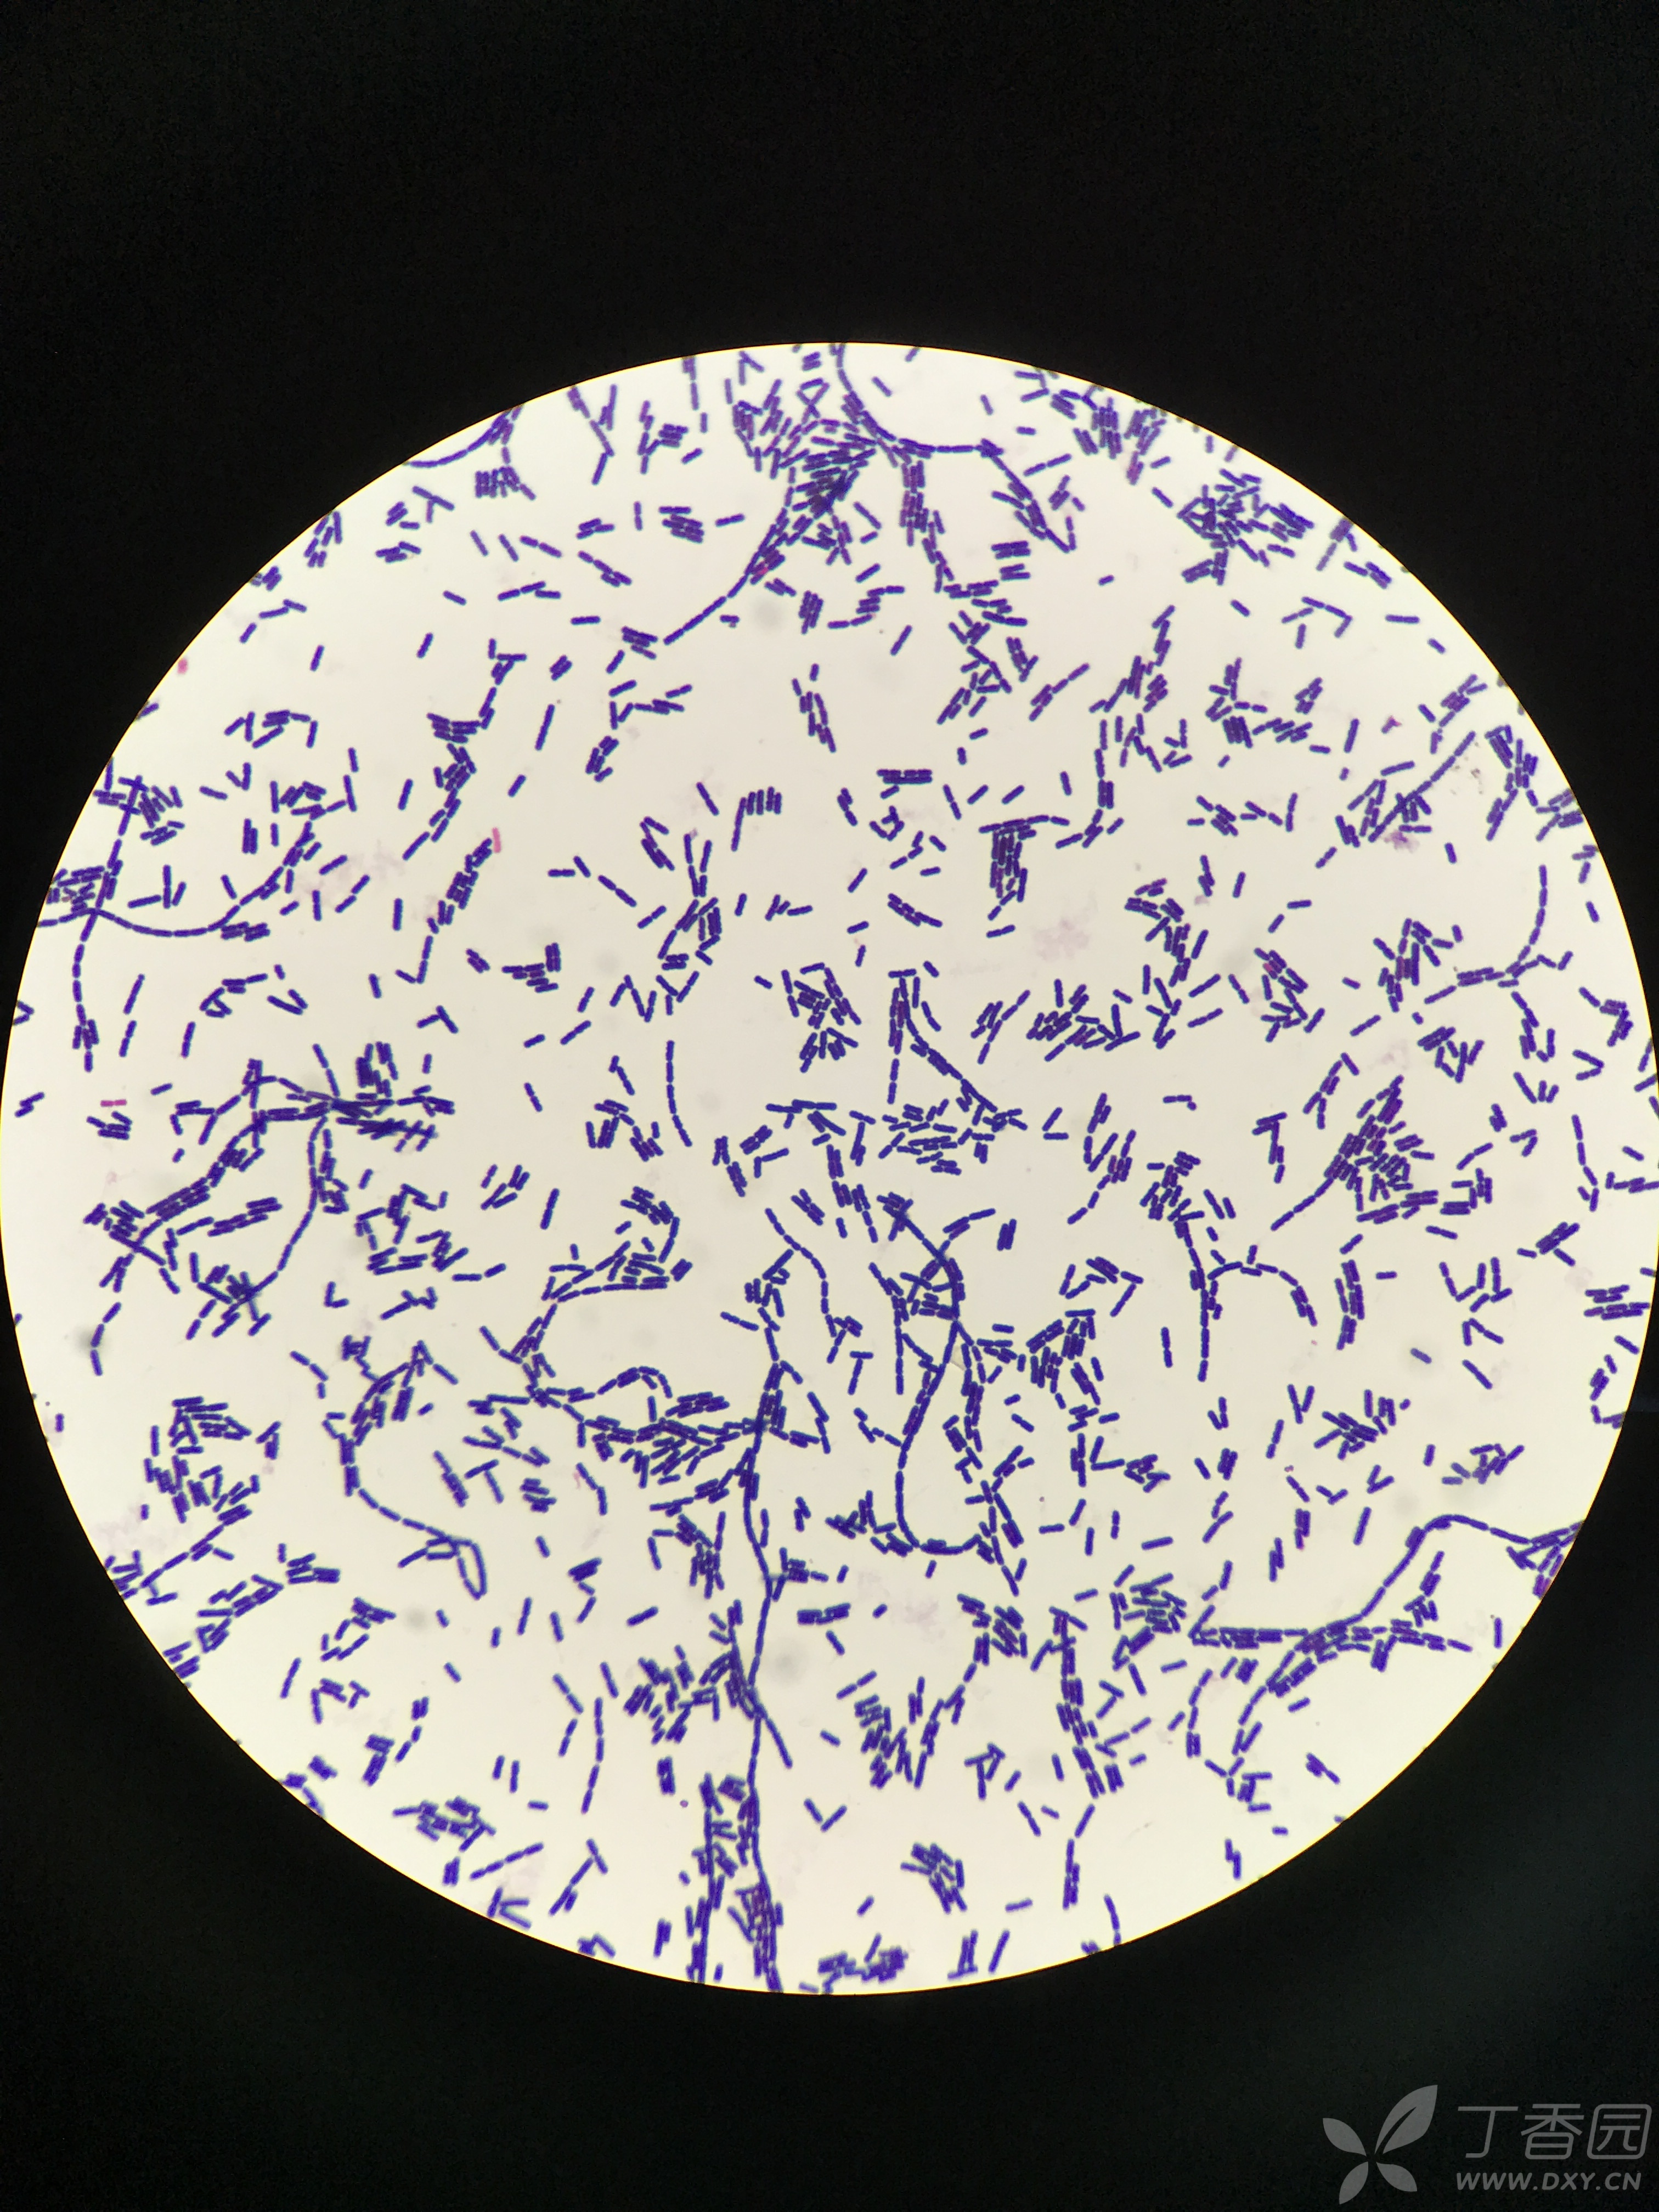 革兰阳性芽孢杆菌